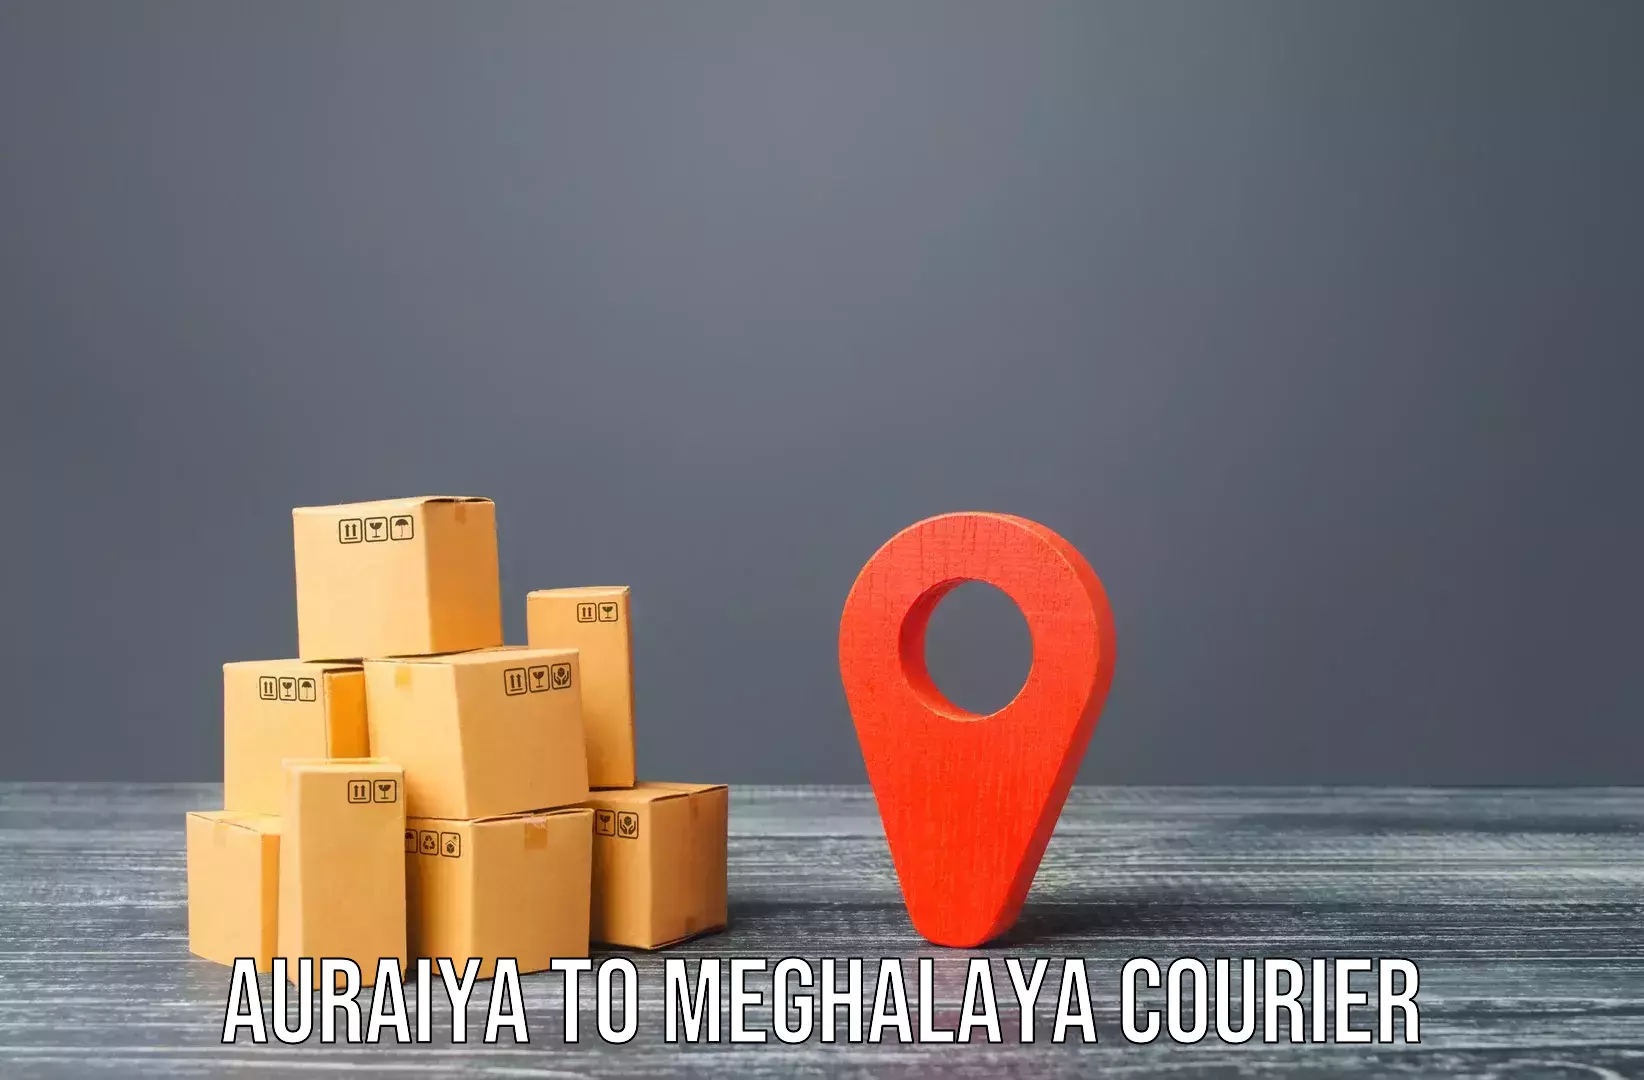 Professional furniture movers Auraiya to Shillong